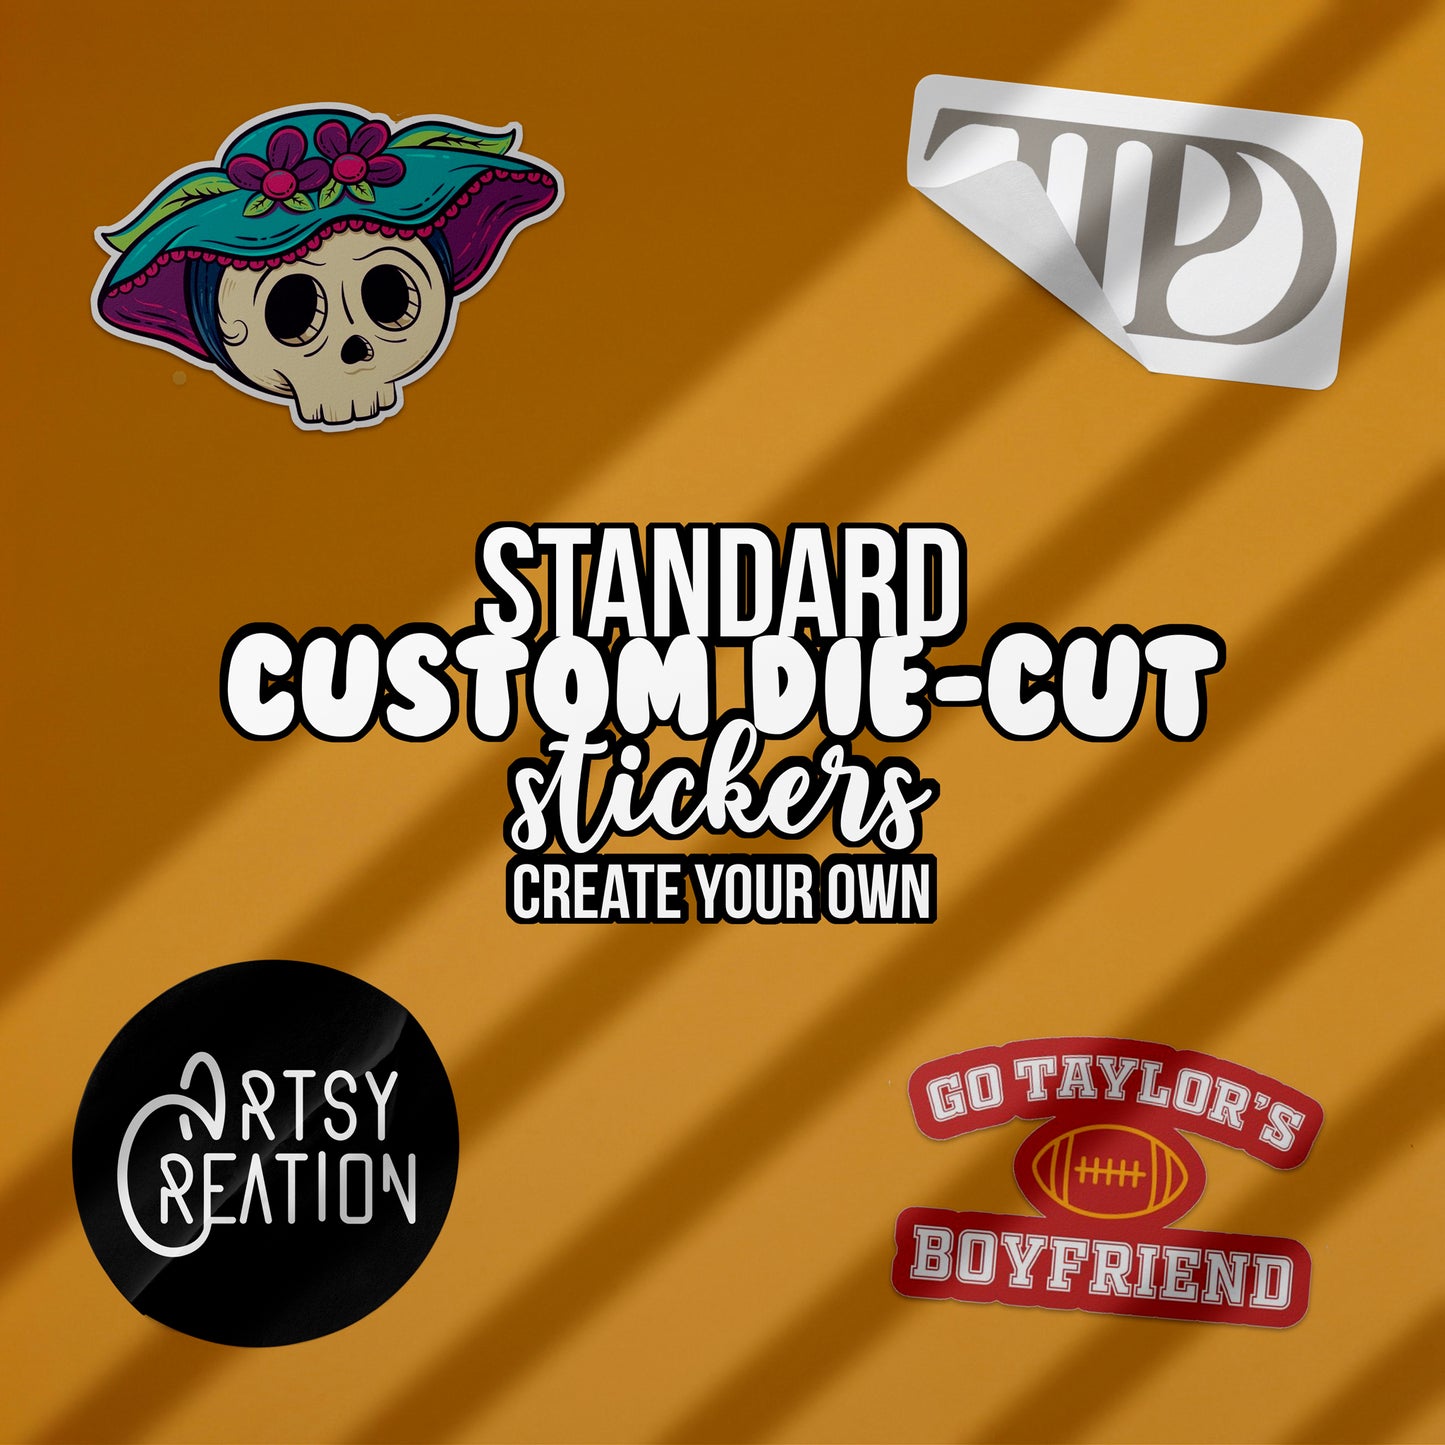 Standard Die-Cut Custom Vinyl Stickers